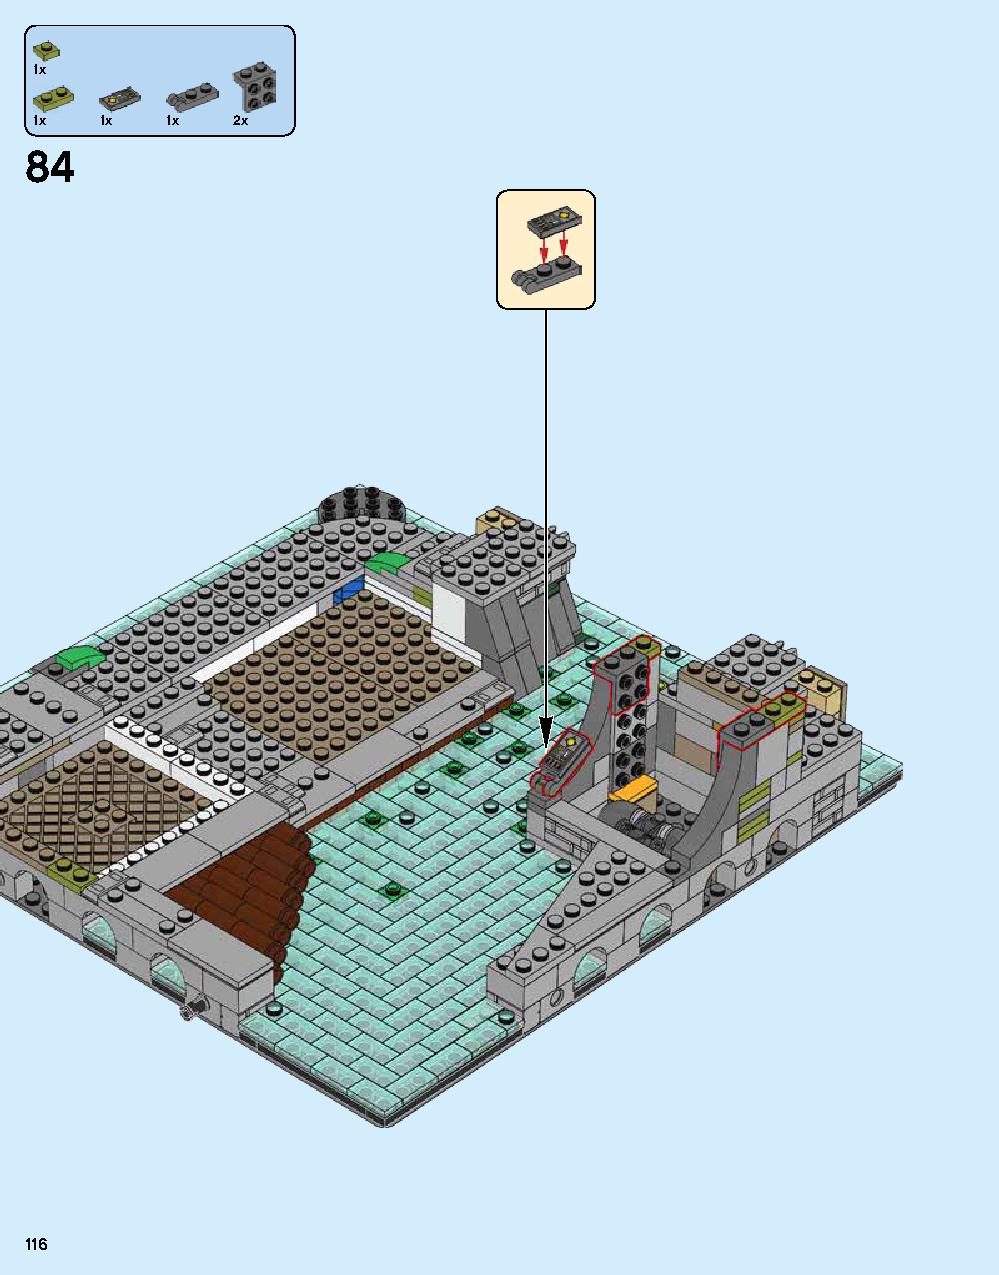 ニンジャゴー シティ 70620 レゴの商品情報 レゴの説明書・組立方法 116 page